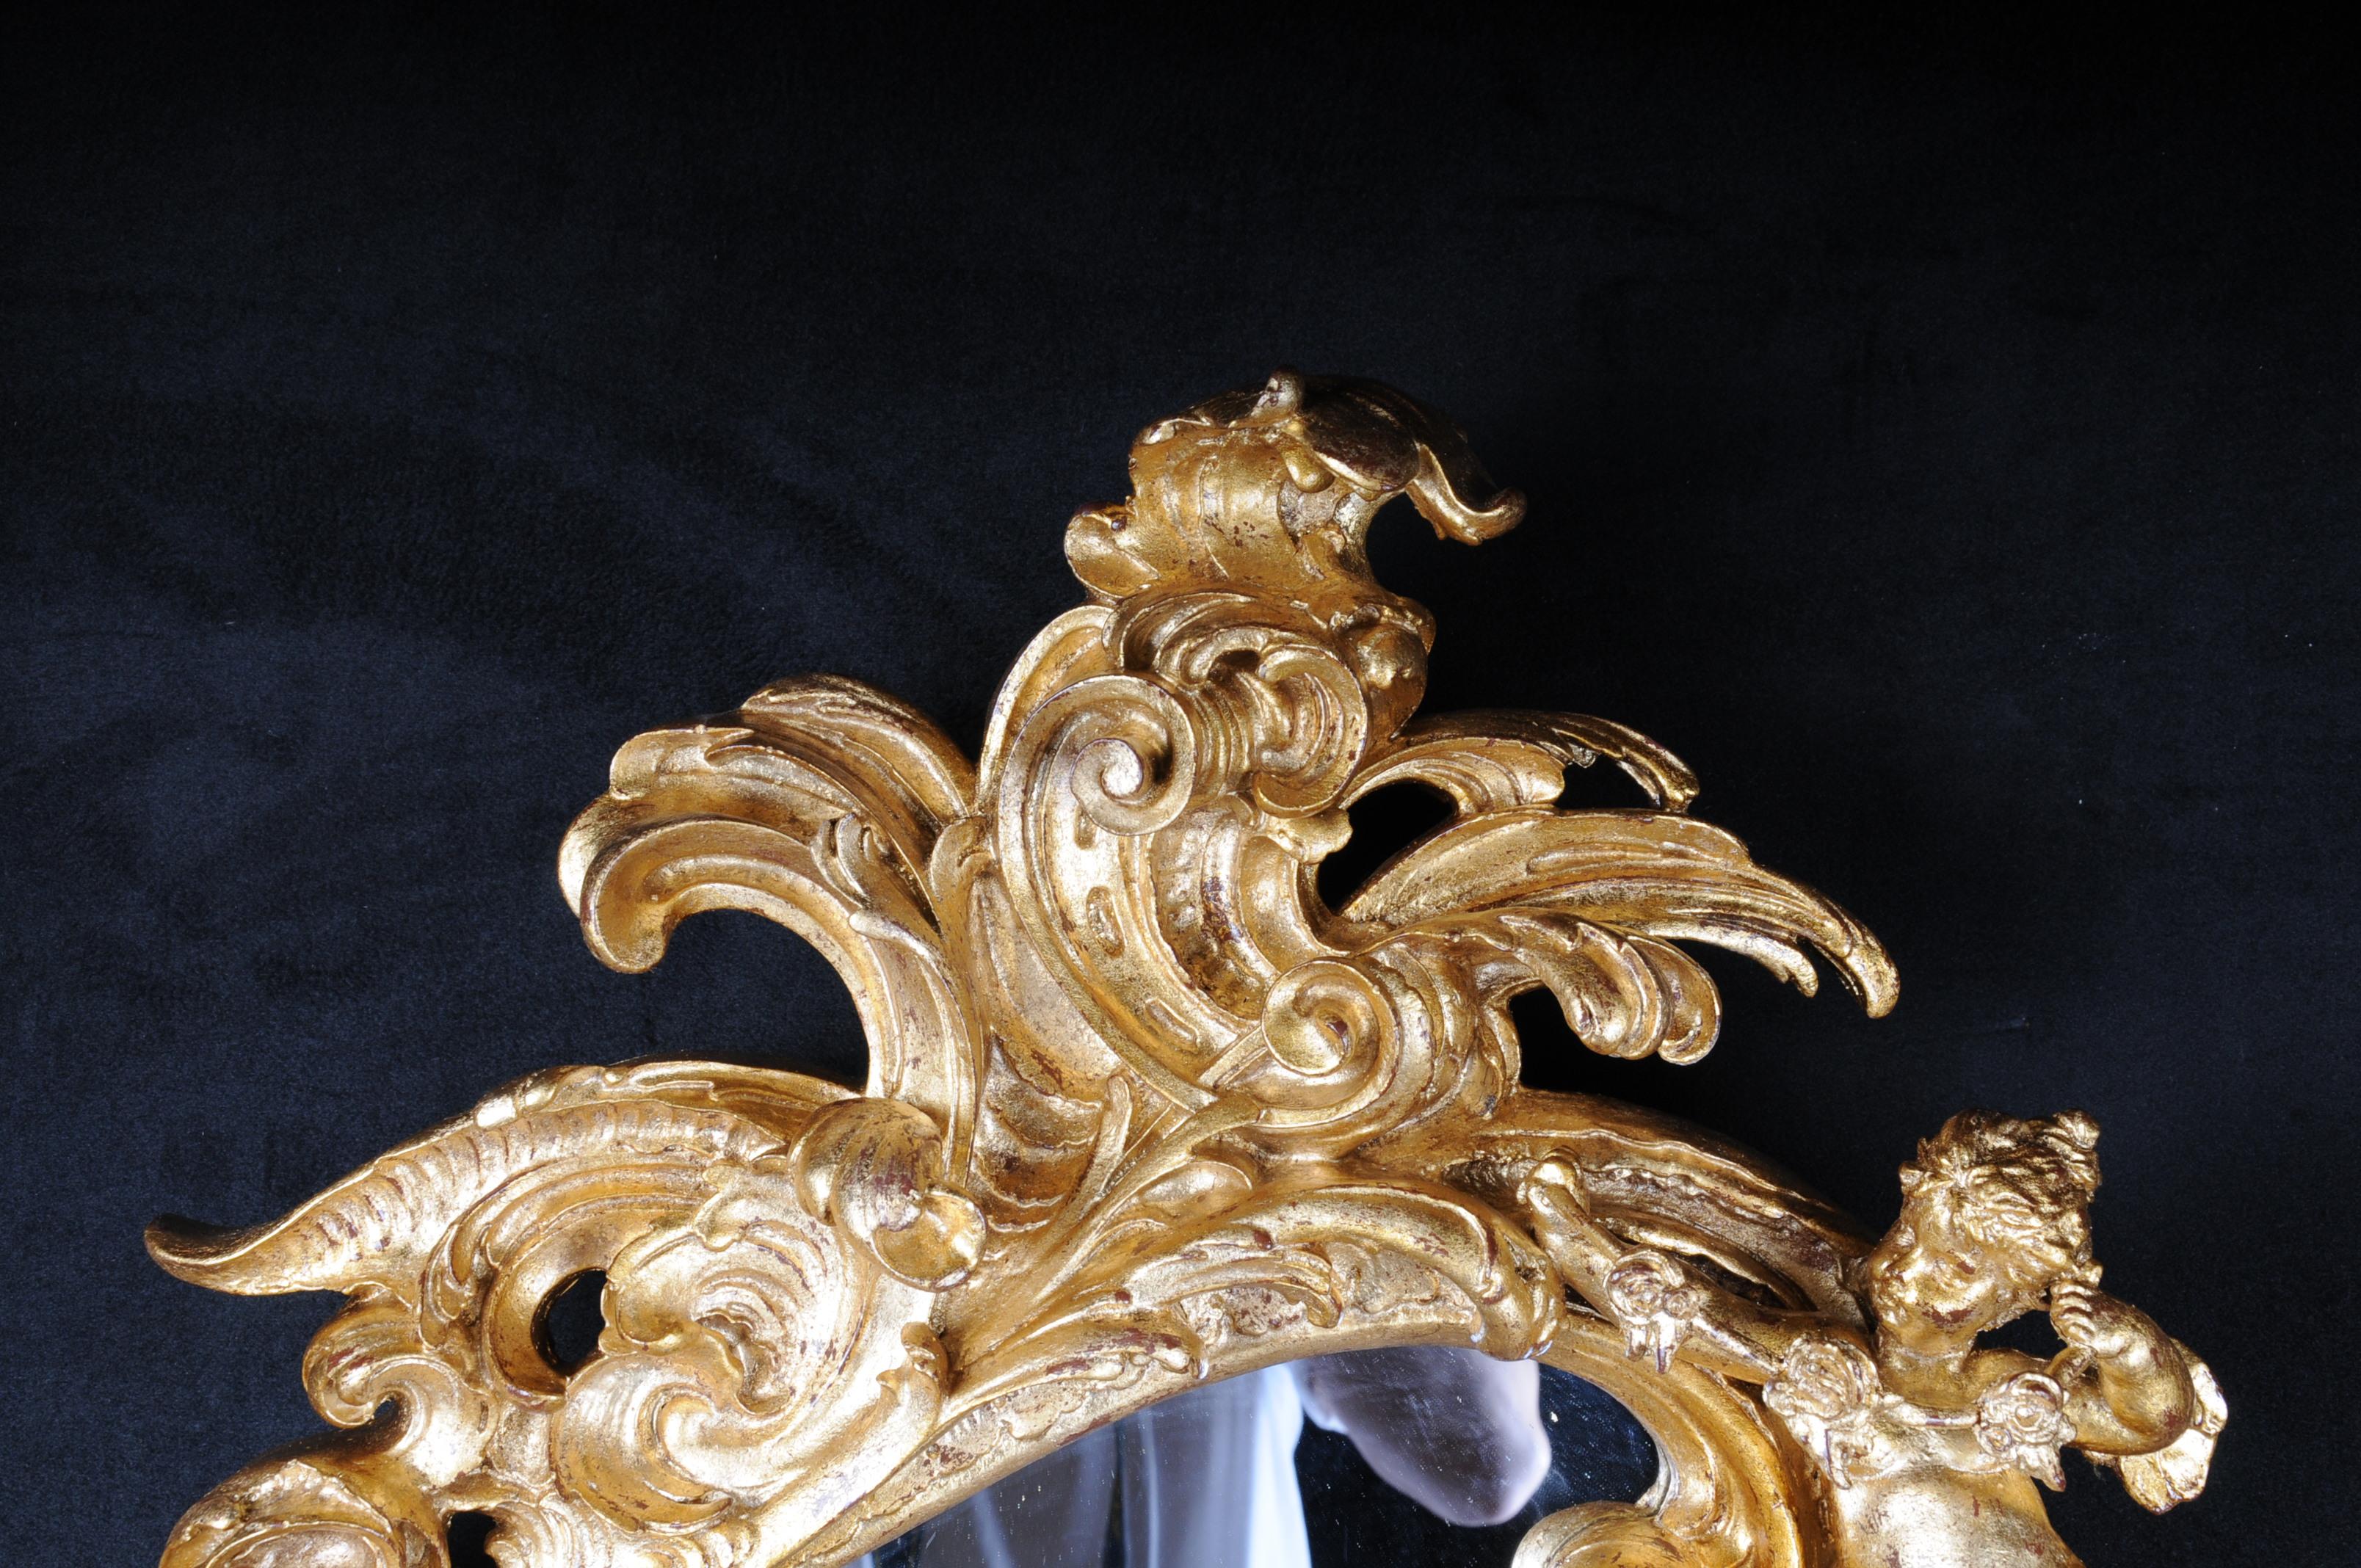 Miroir mural décoratif rococo / baroque avec putti, doré

Hêtre massif, finement sculpté, doré. Cadre de miroir en forme de rocaille. Couronne ajourée de rocaille. Cadre de miroir en forme de rocaille extrêmement frisée. Couronne de